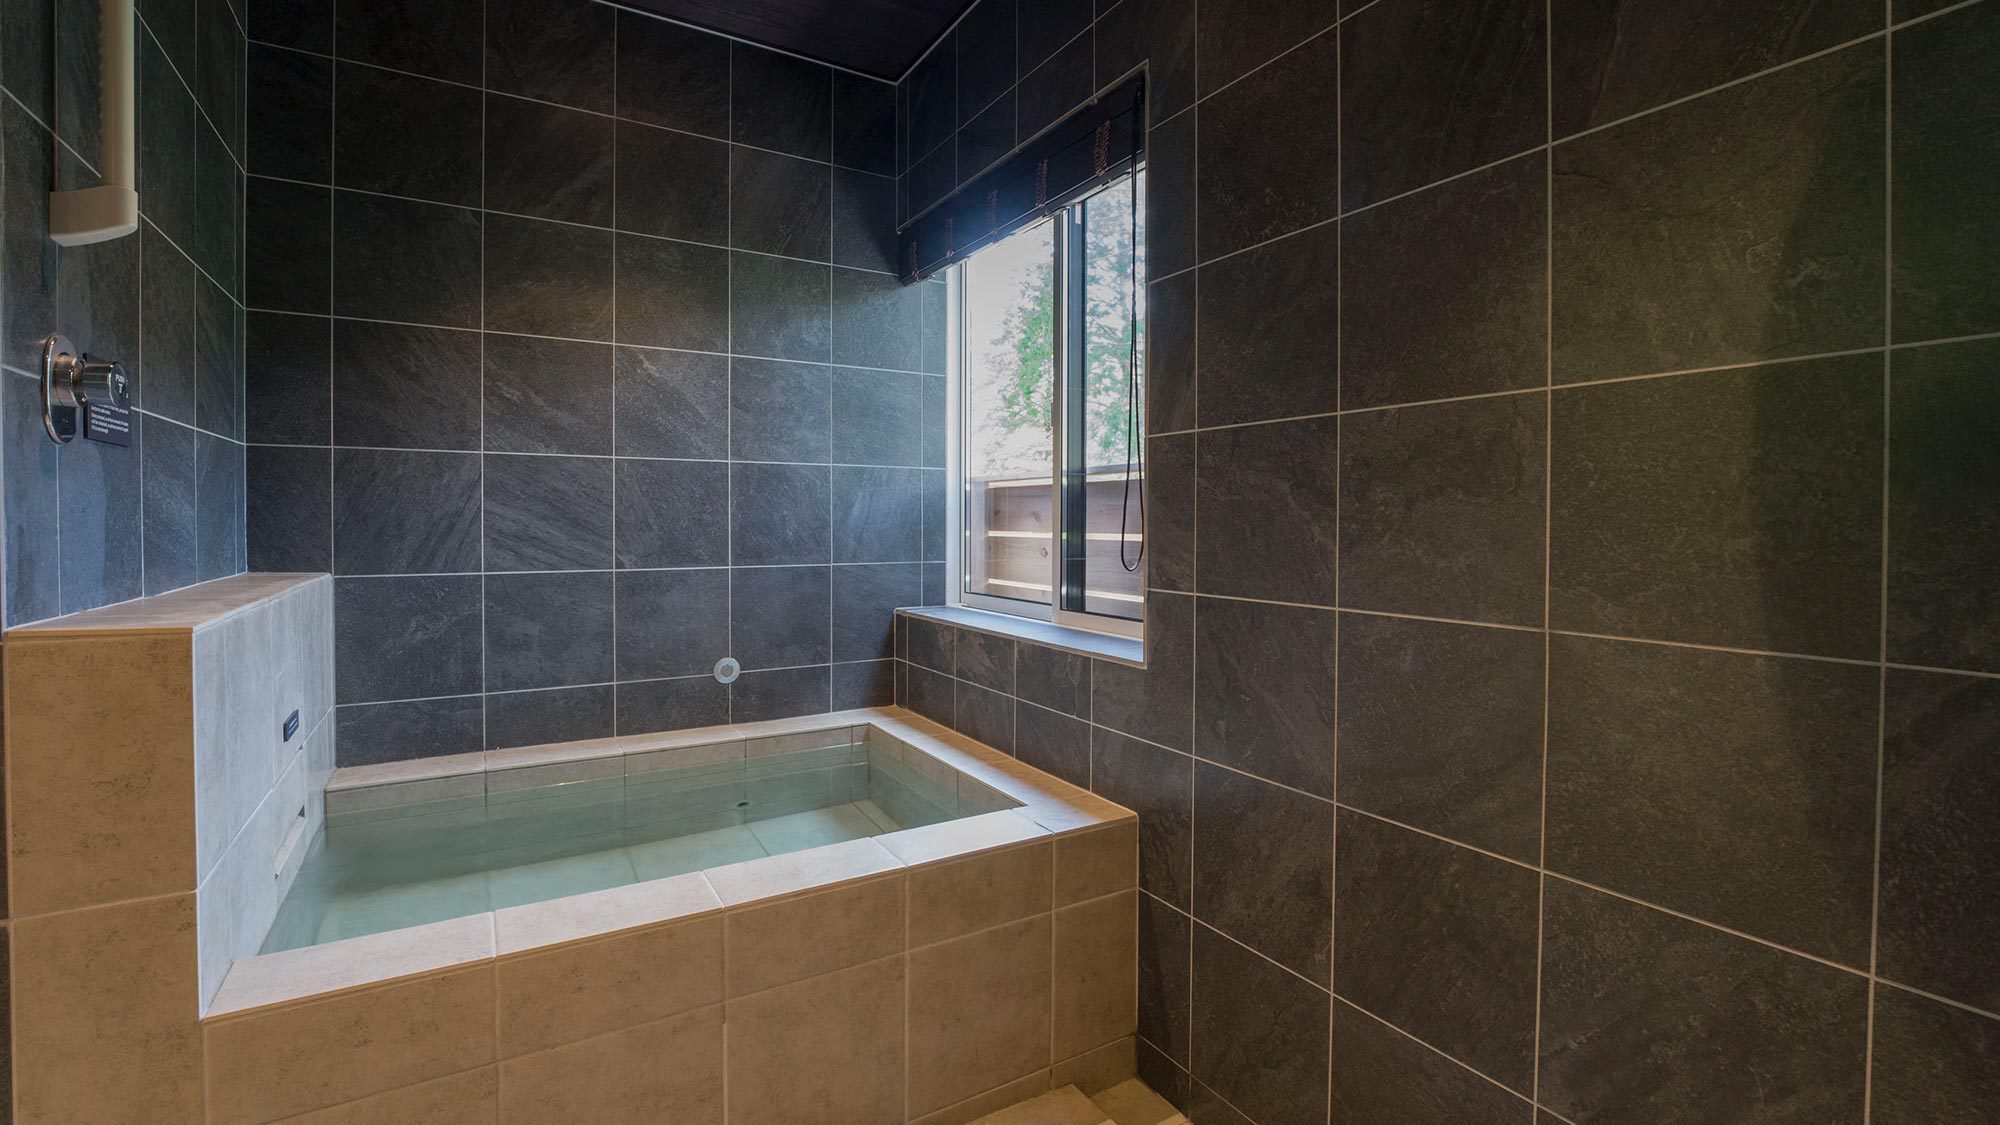 【浴室】鬼怒川の森林を感じながら、天然温泉で癒されること間違いなし